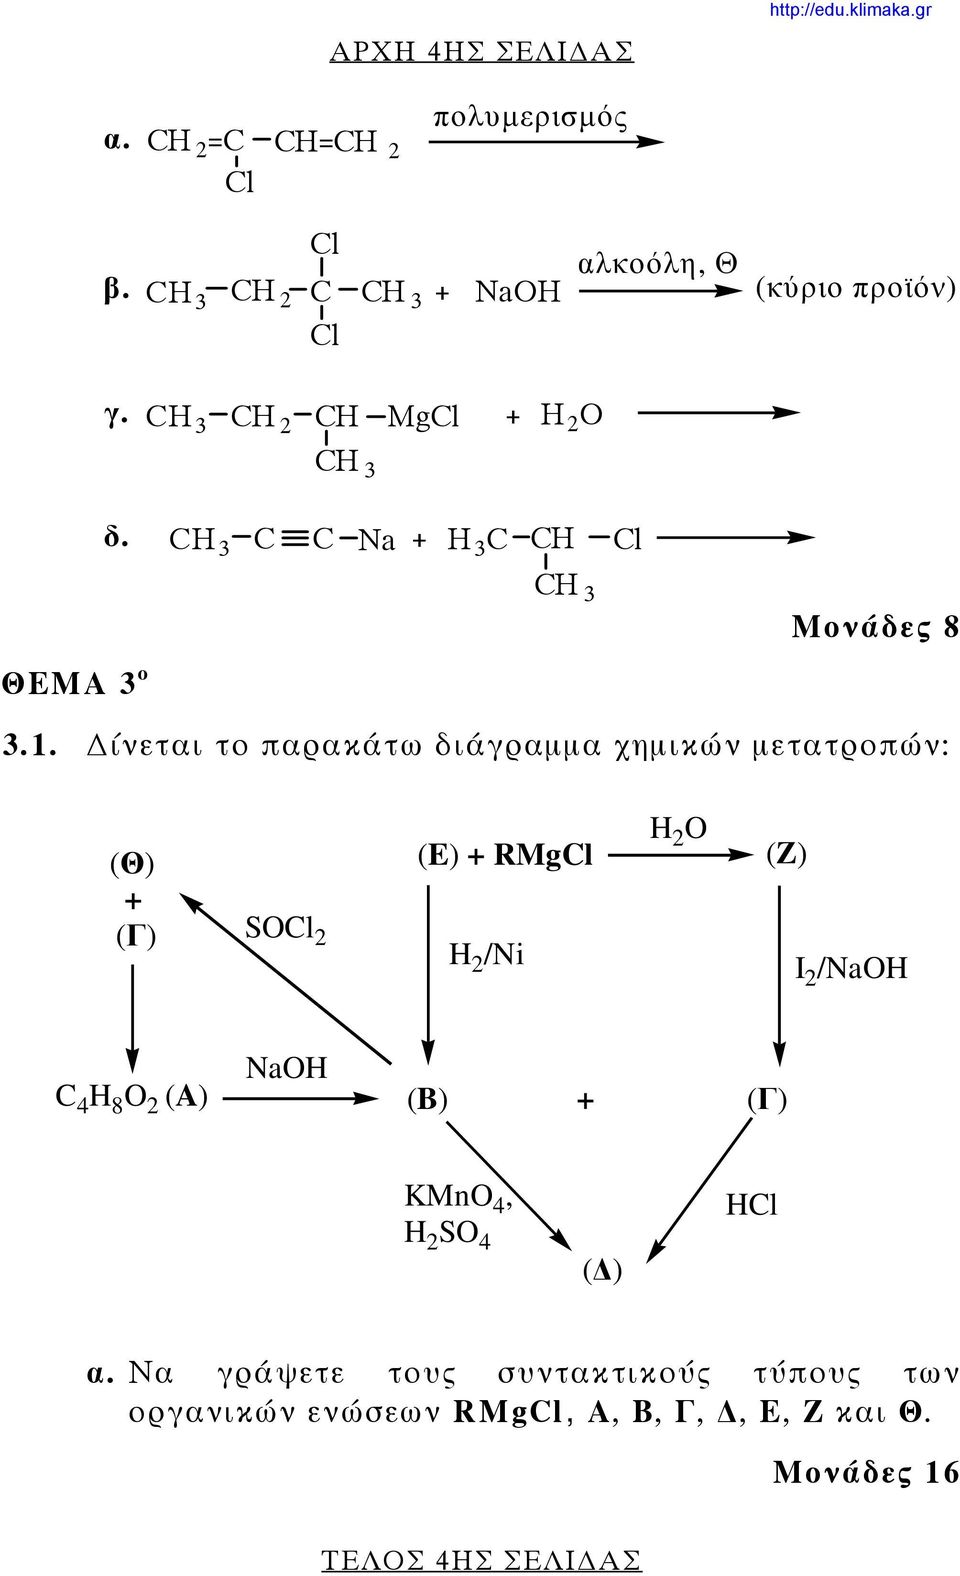 ίνεται το παρακάτω διάγραμμα χημικών μετατροπών: (Θ) + (Γ) SOCl 2 (E) + RMgCl H 2 /Ni H 2 O (Z) I 2 /NaOH C 4 H 8 O 2